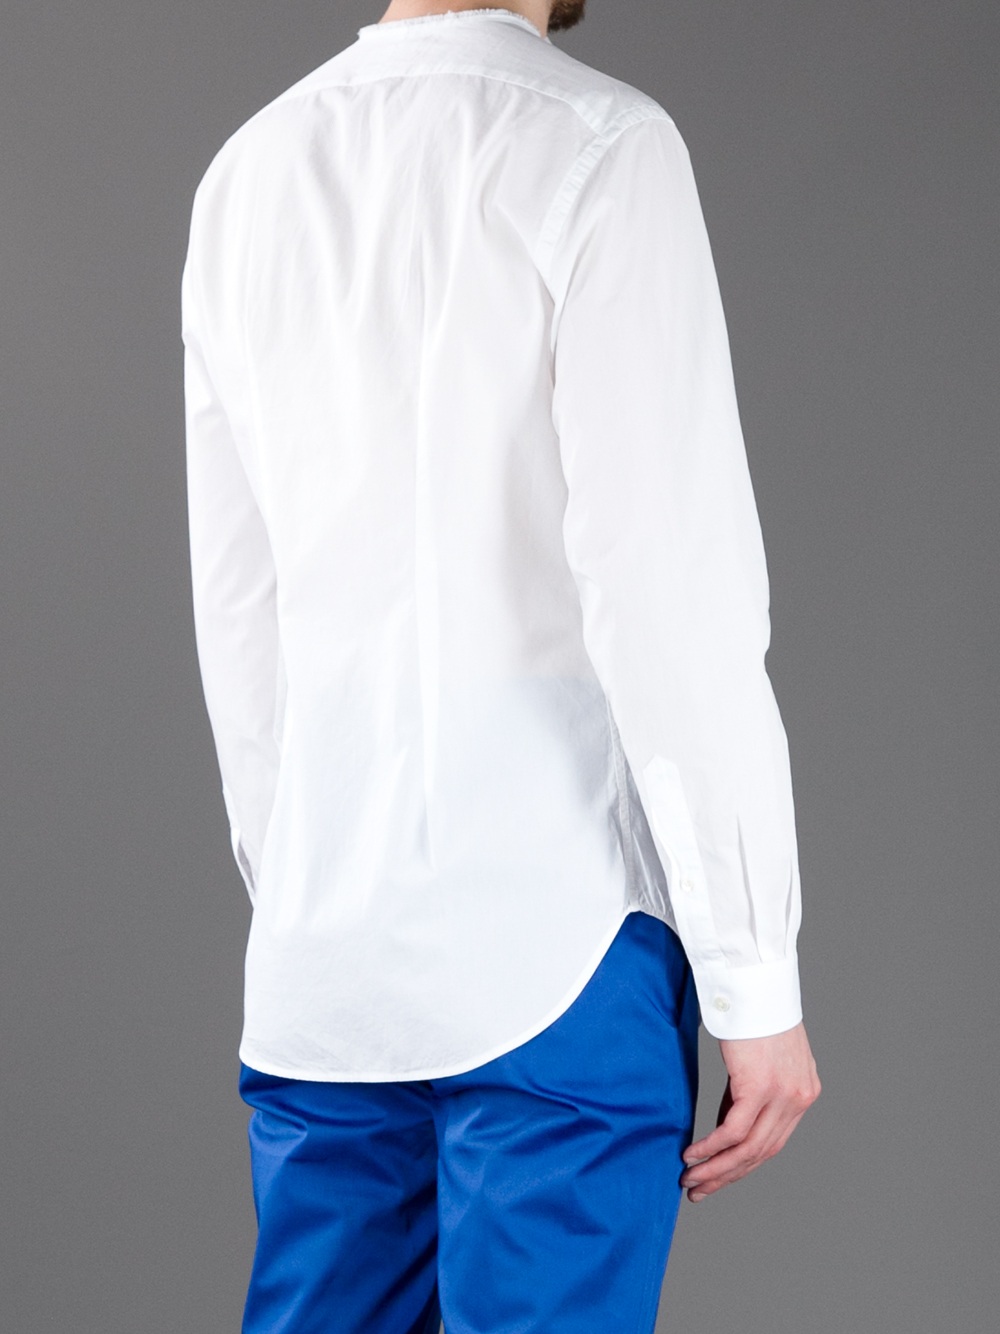 Lyst - Acne Studios Meryl Collarless Shirt in White for Men